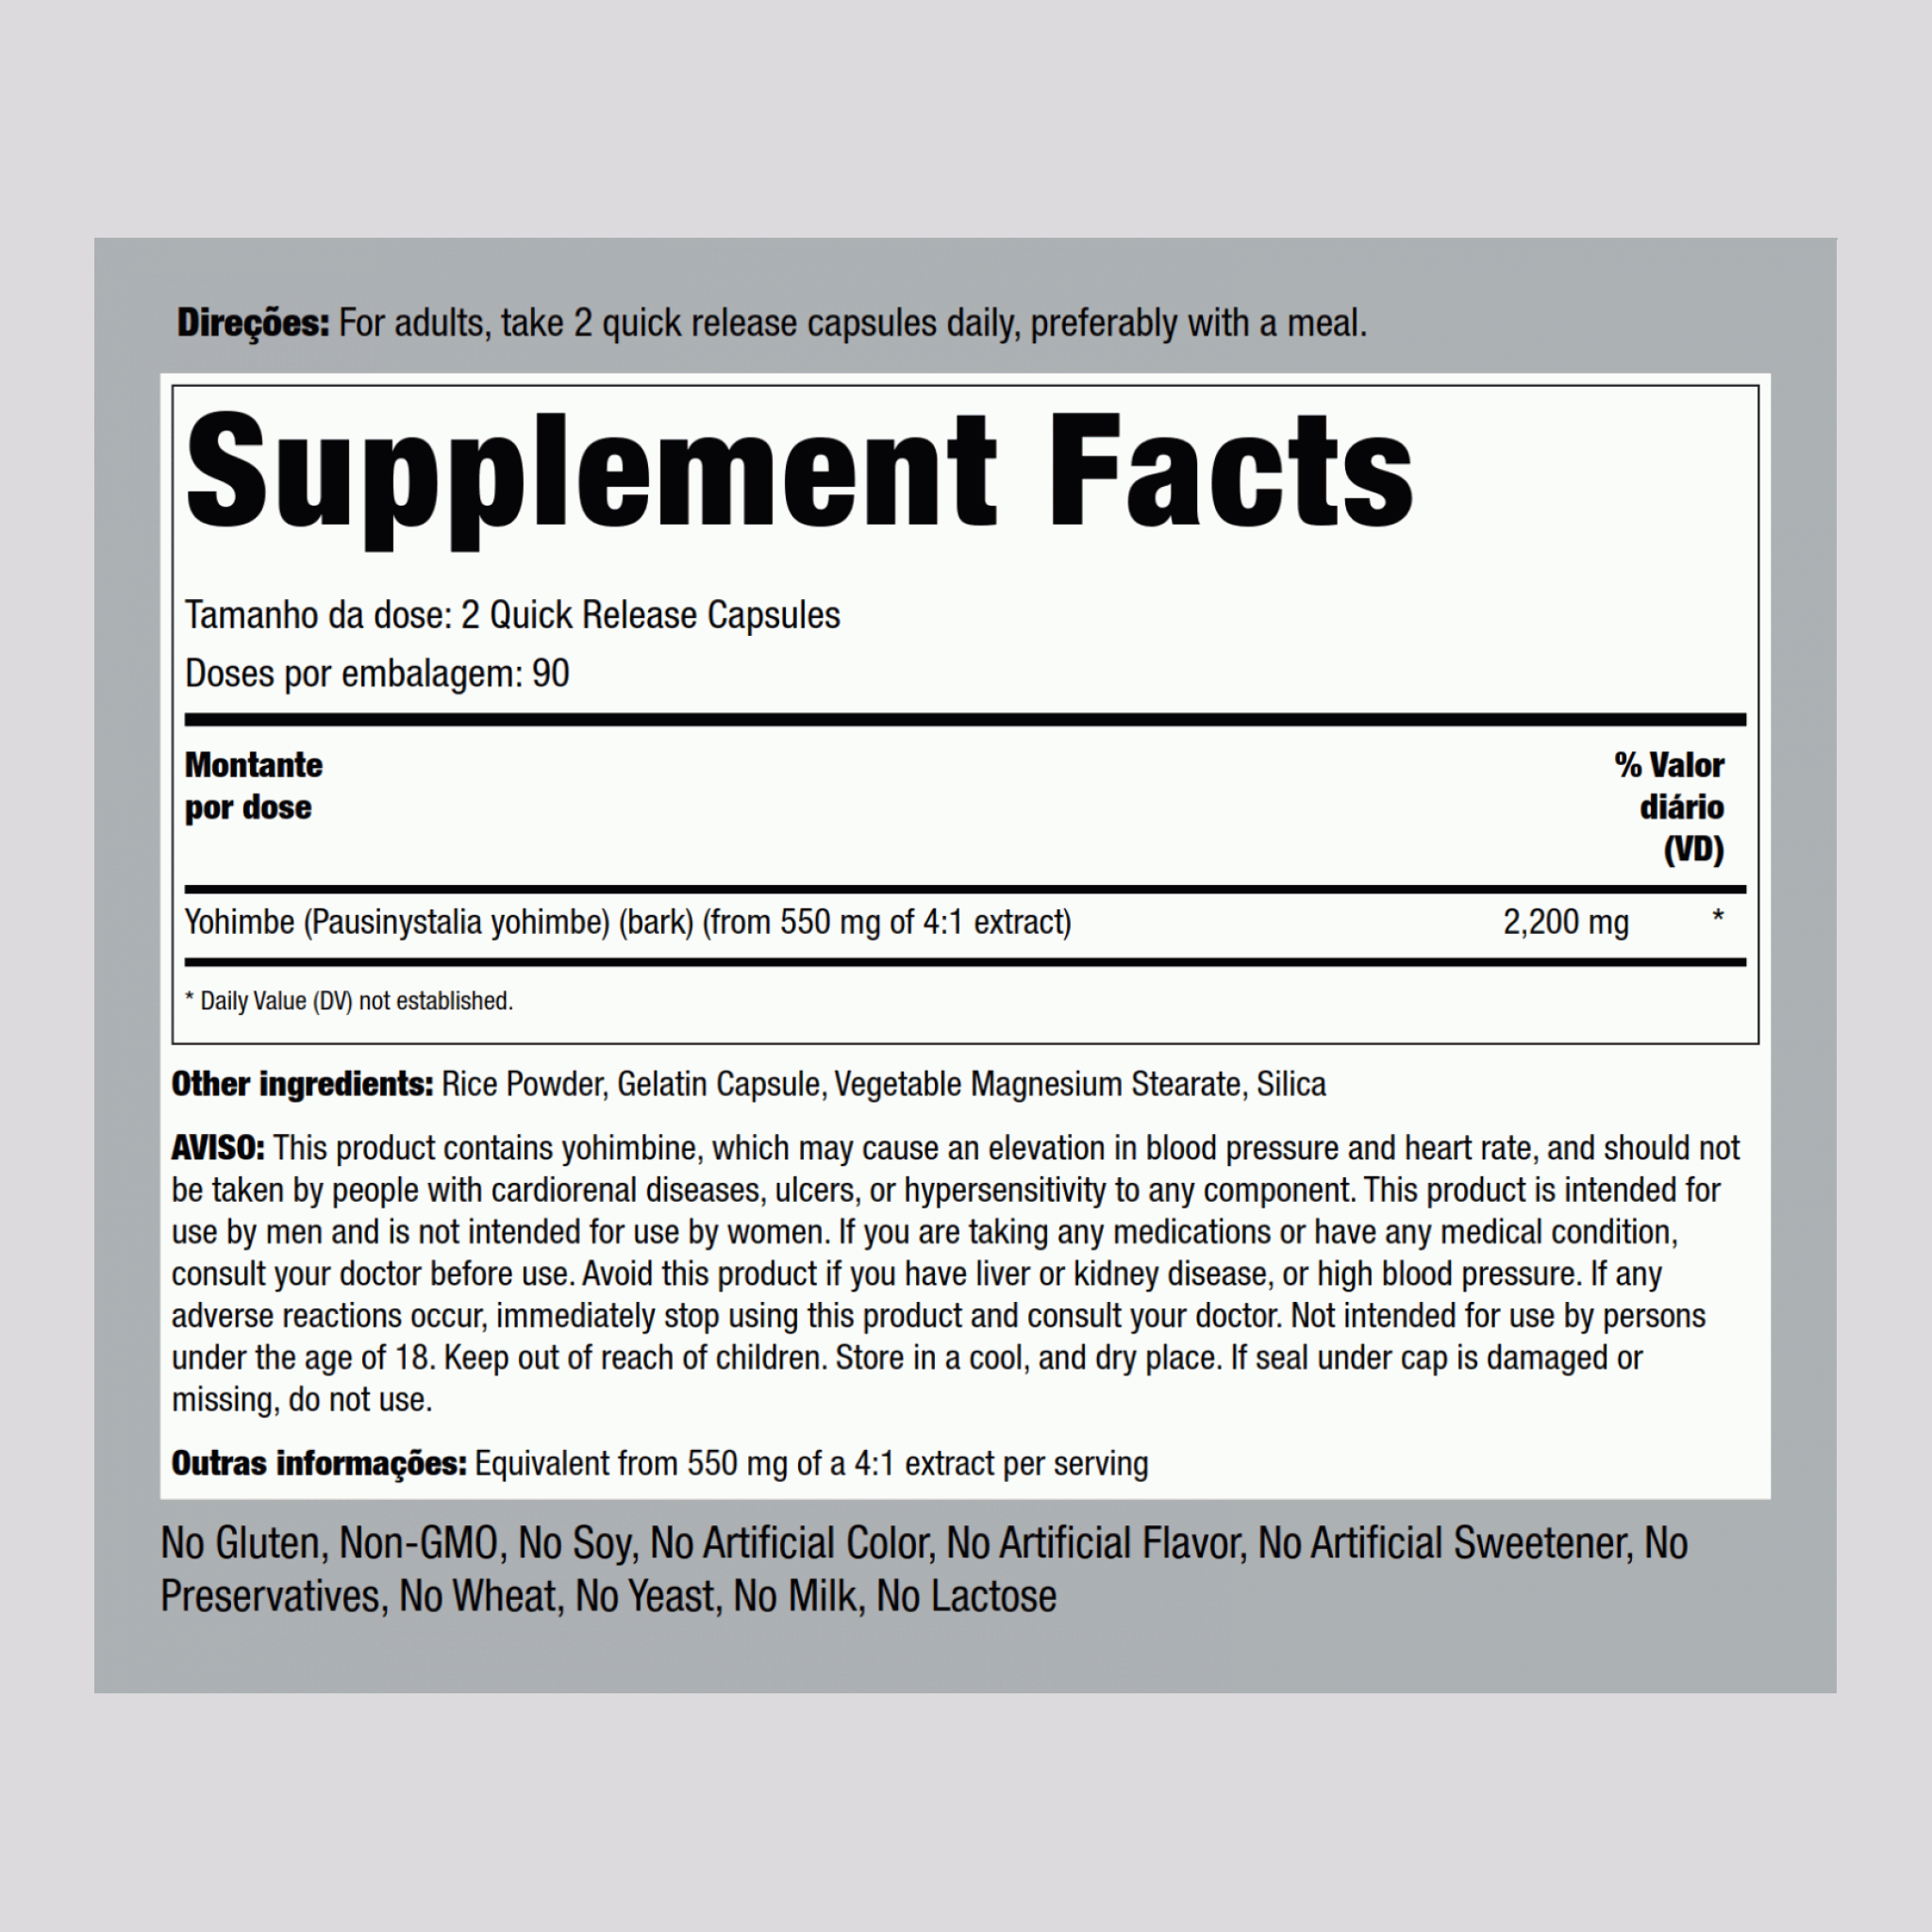 Super Yohimbe Max 2200 2200 mg (por dose) 180 Cápsulas de Rápida Absorção     